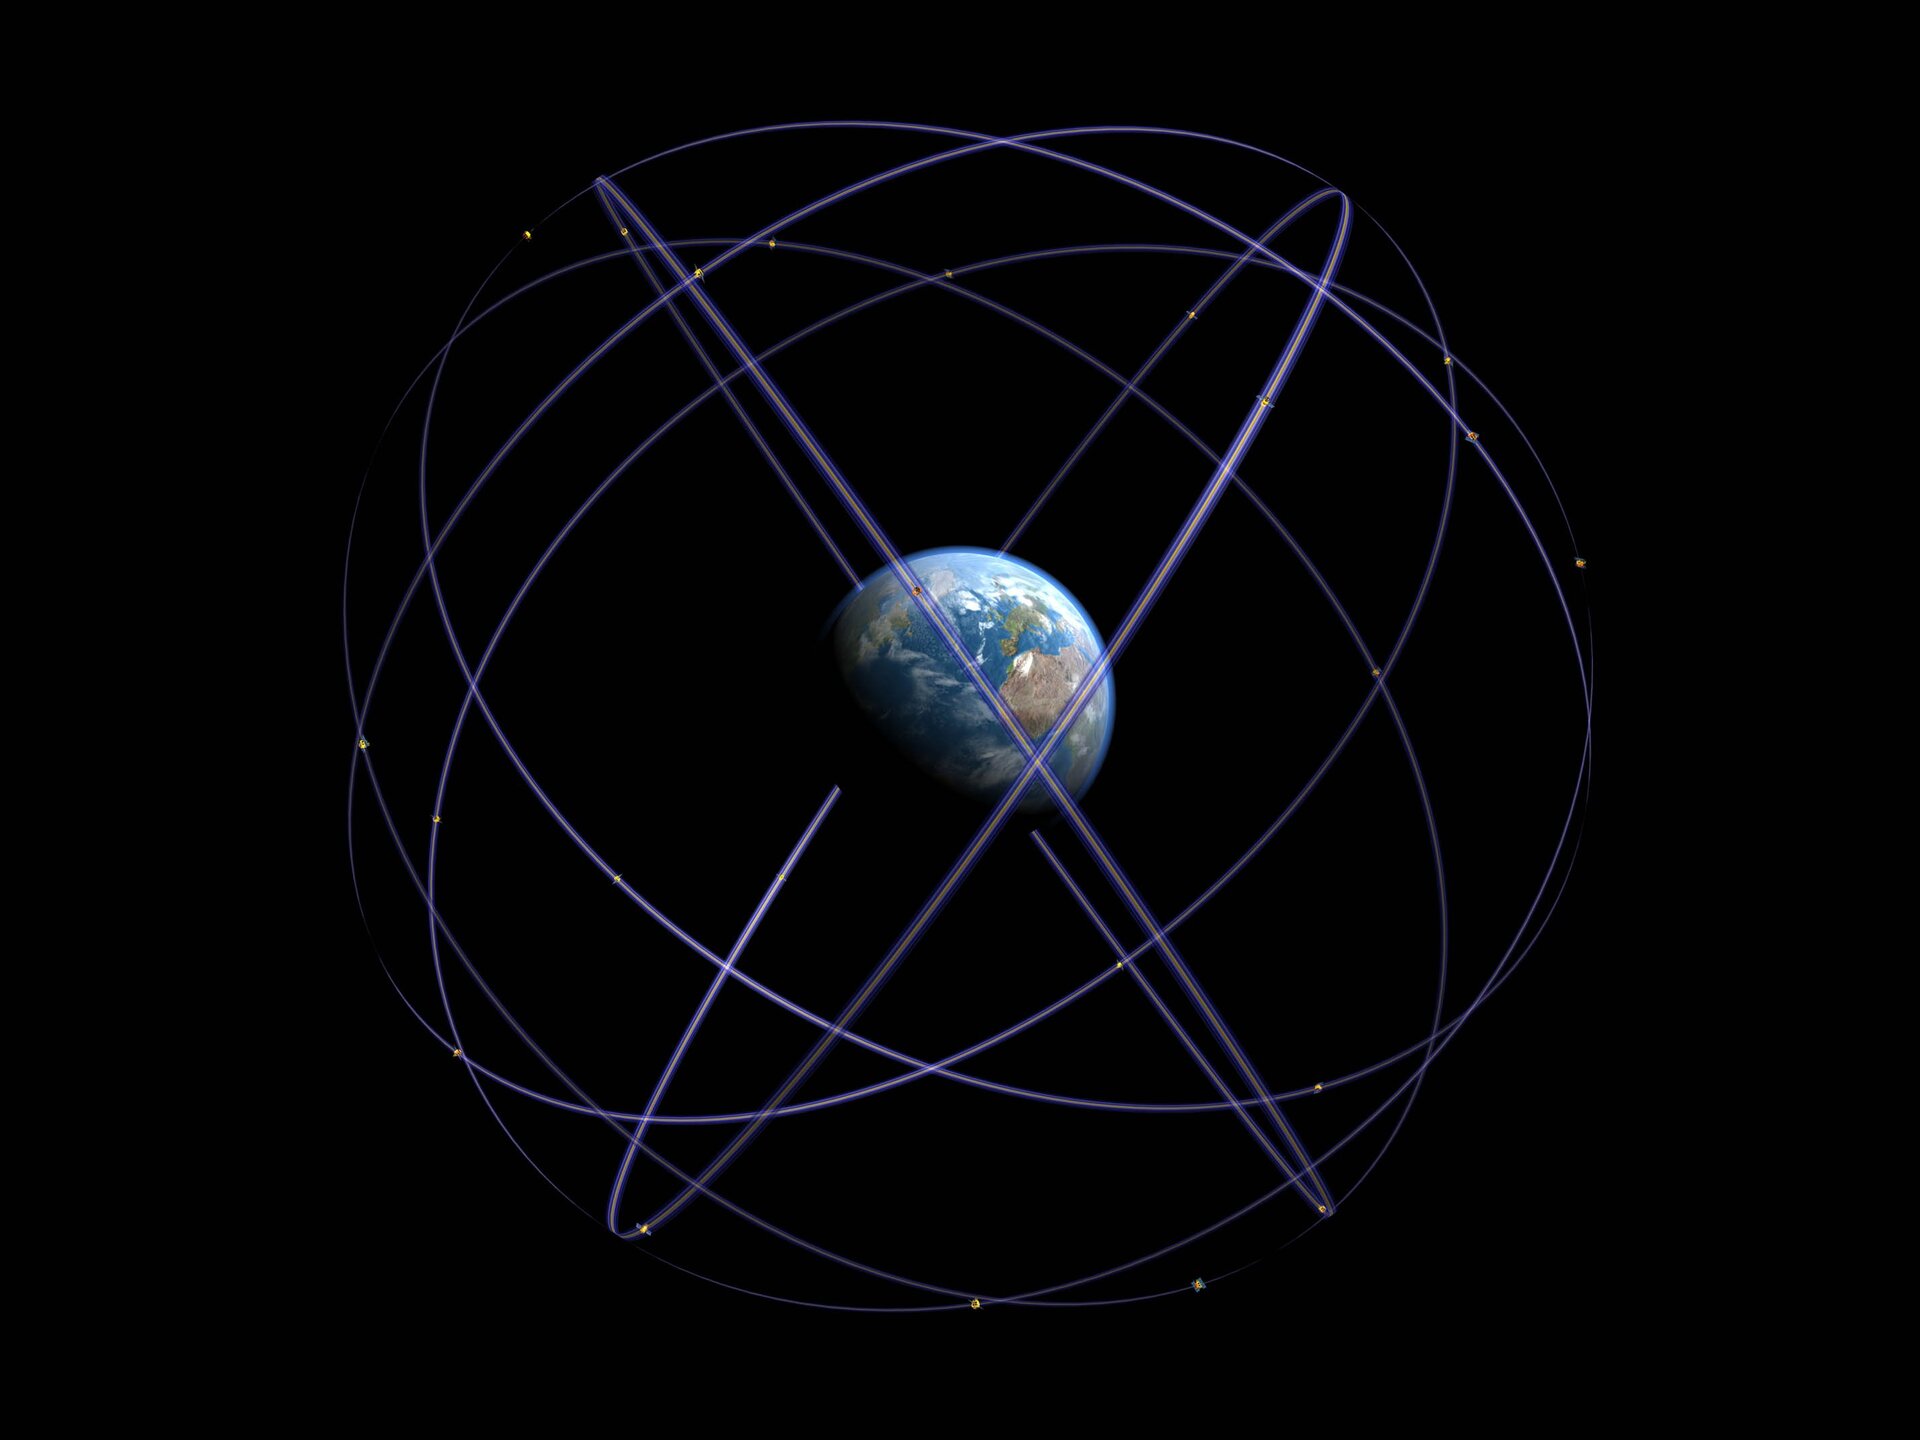 Galileo orbits